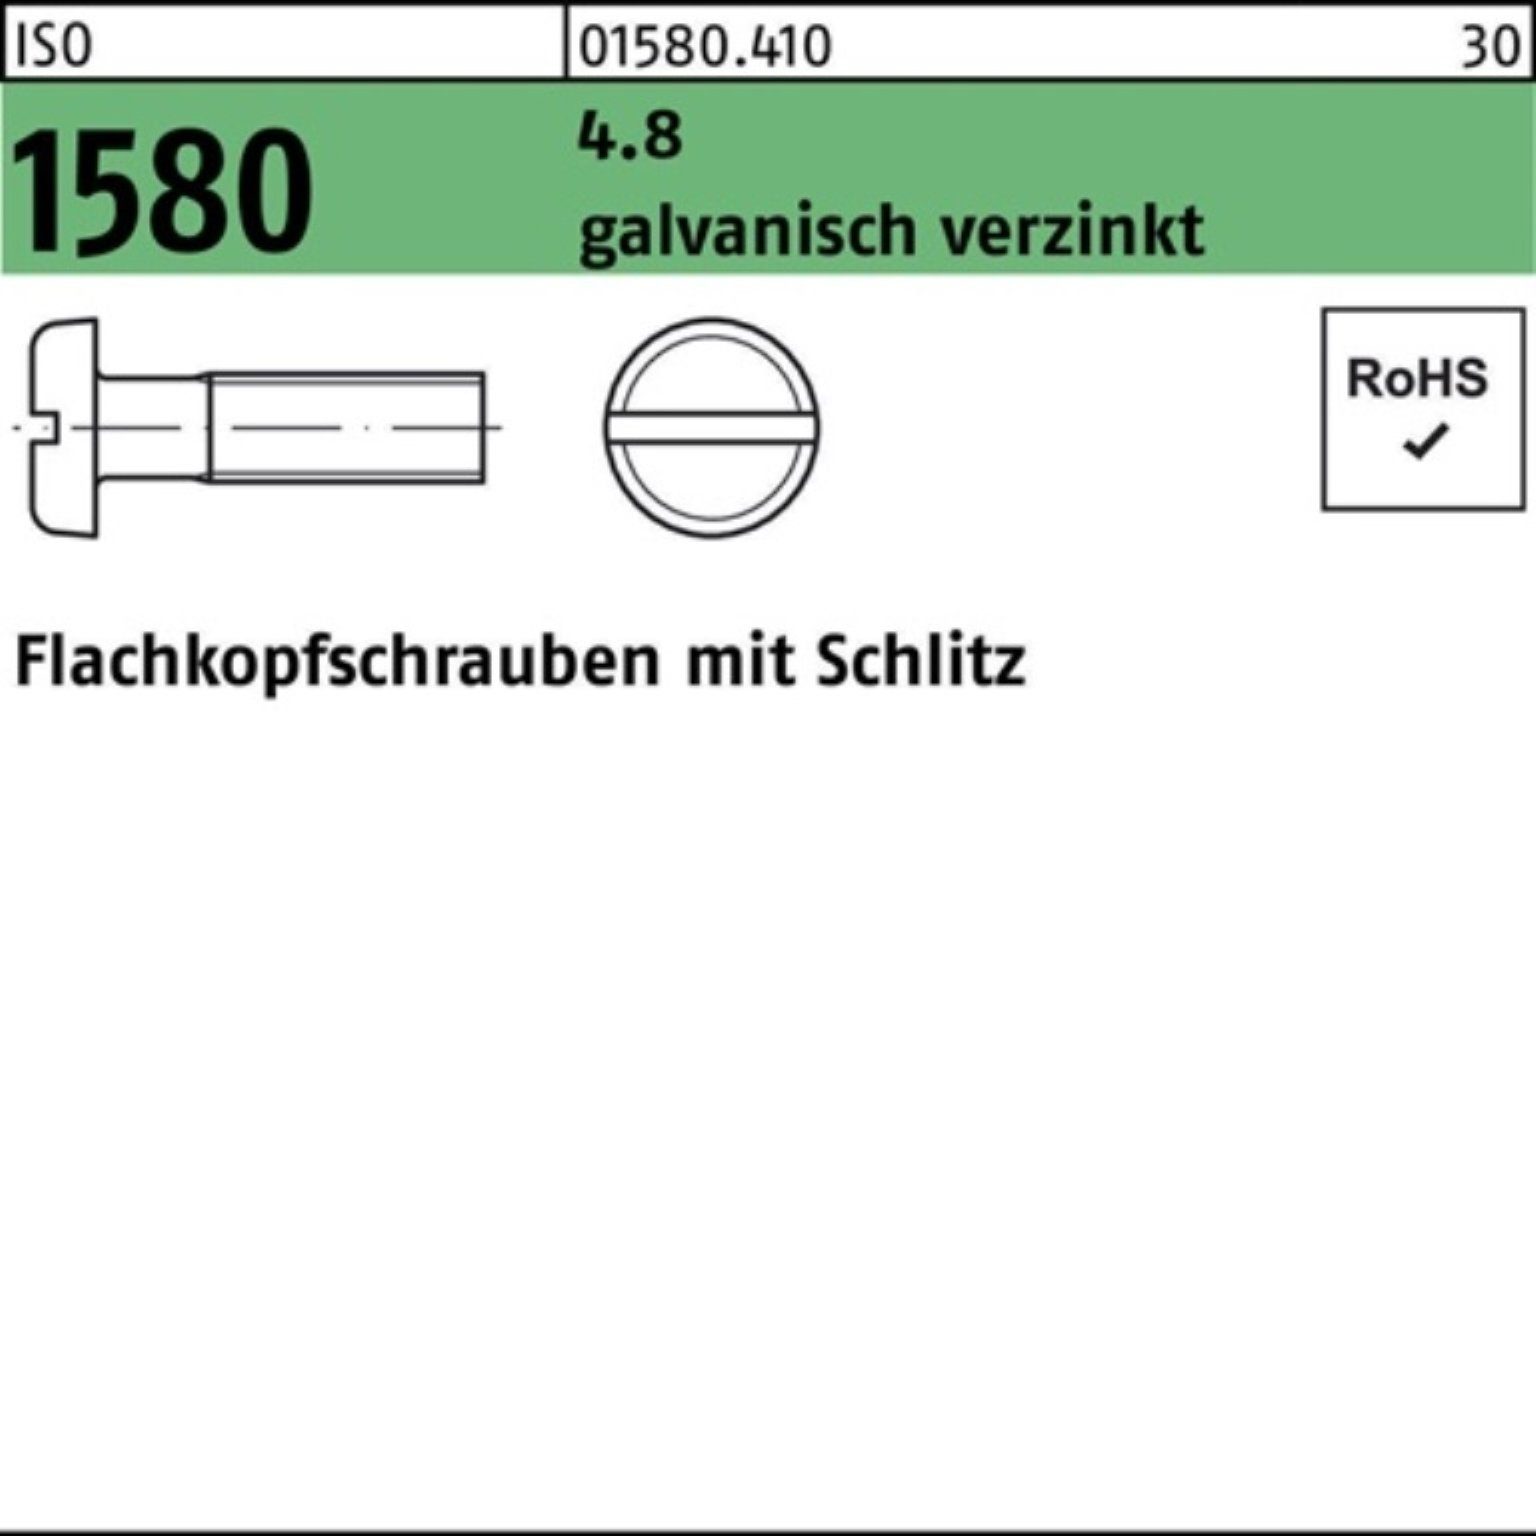 Reyher Schraube 4.8 1580 200er ISO galv.verz. Schlitz 200 Pack 5 M4x Flachkopfschraube